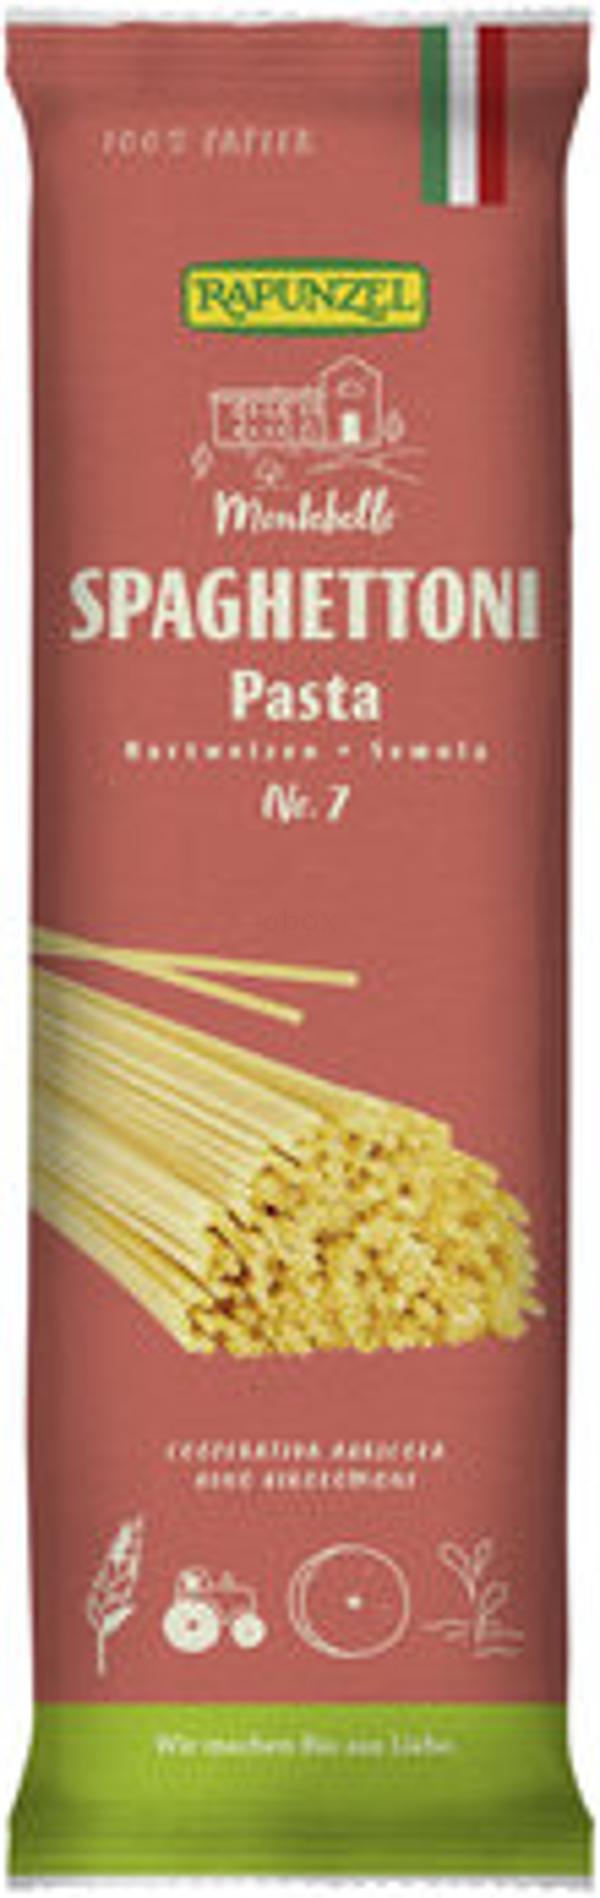 Produktfoto zu Spaghettoni Semola no.7, 500 g